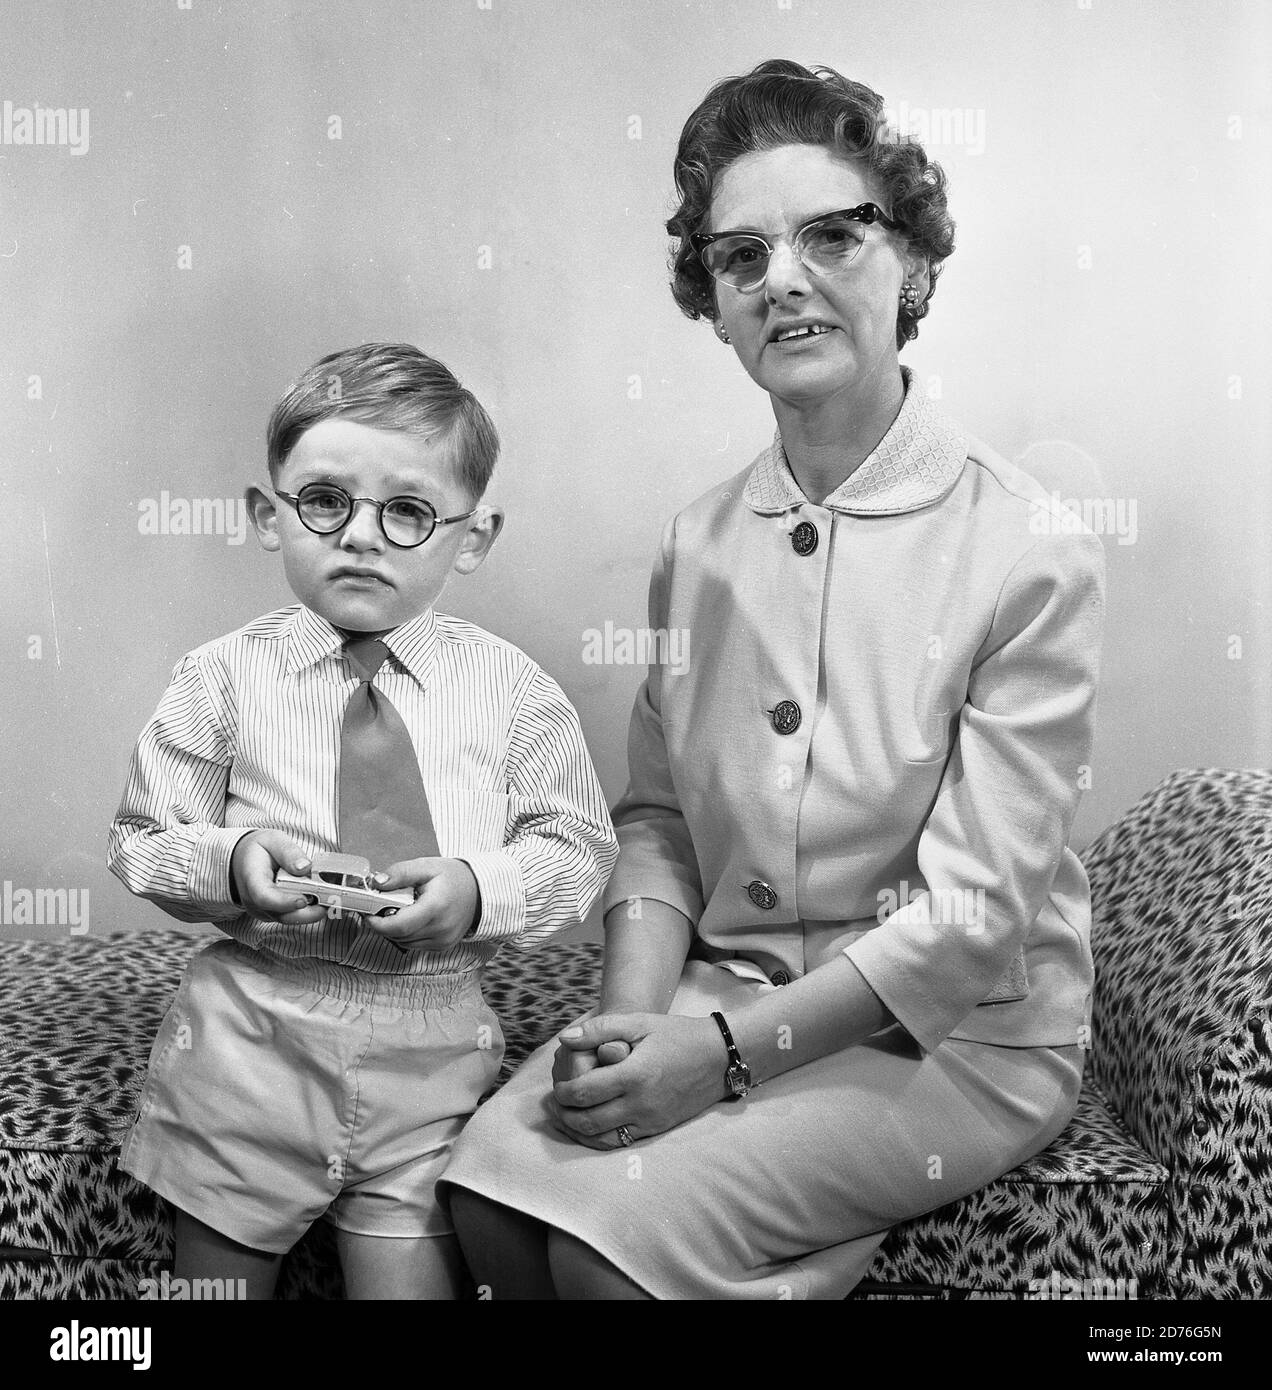 années 1960, historique, comme la mère, comme le fils! Petit garçon avec de petites lunettes rondes et tenant sa voiture en métal jouet dans les mains debout à côté de sa mère, qui porte également une paire de lunettes, qui ont été l'un des styles féminins populaires cette époque, Angleterre, Royaume-Uni. Banque D'Images